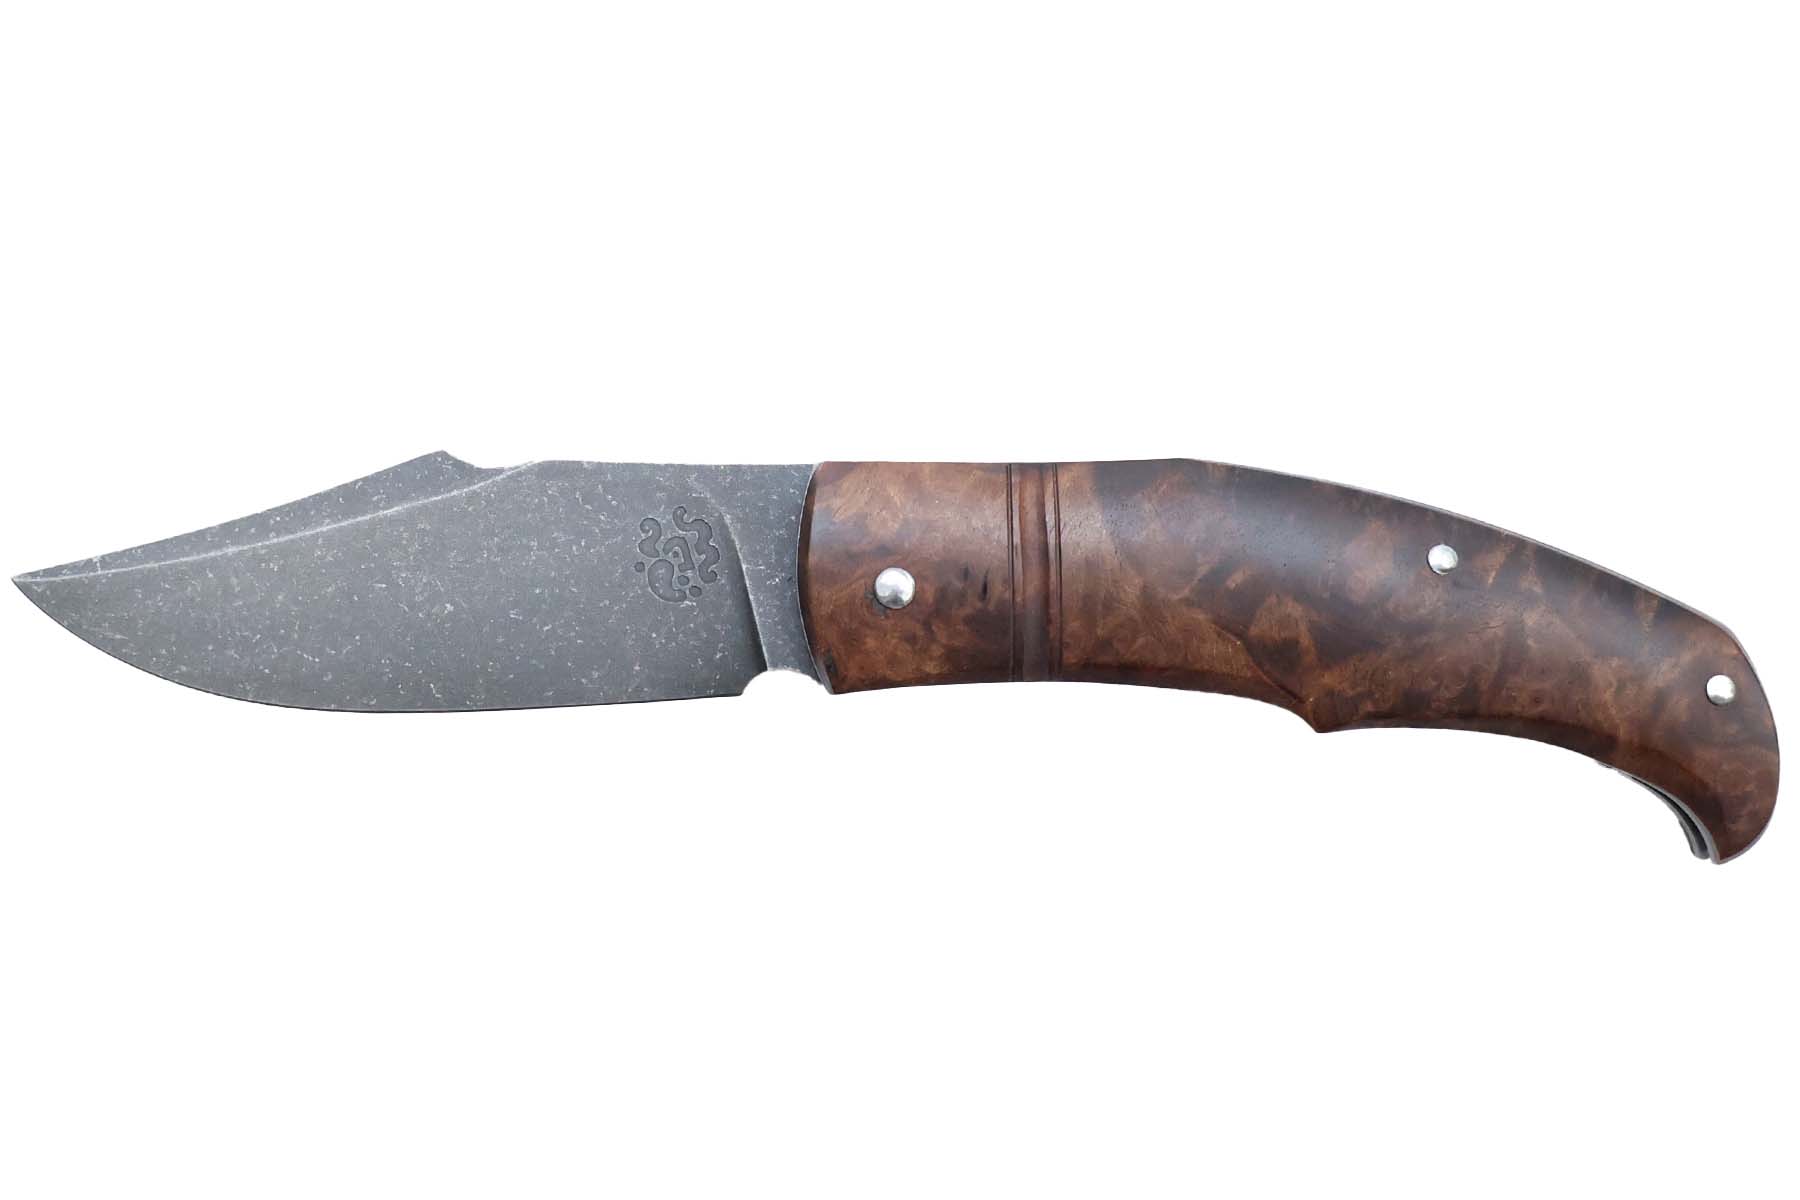 Couteau pliant artisanal "Forge Celtique" de Delbart fabrice - noyer stabilisé